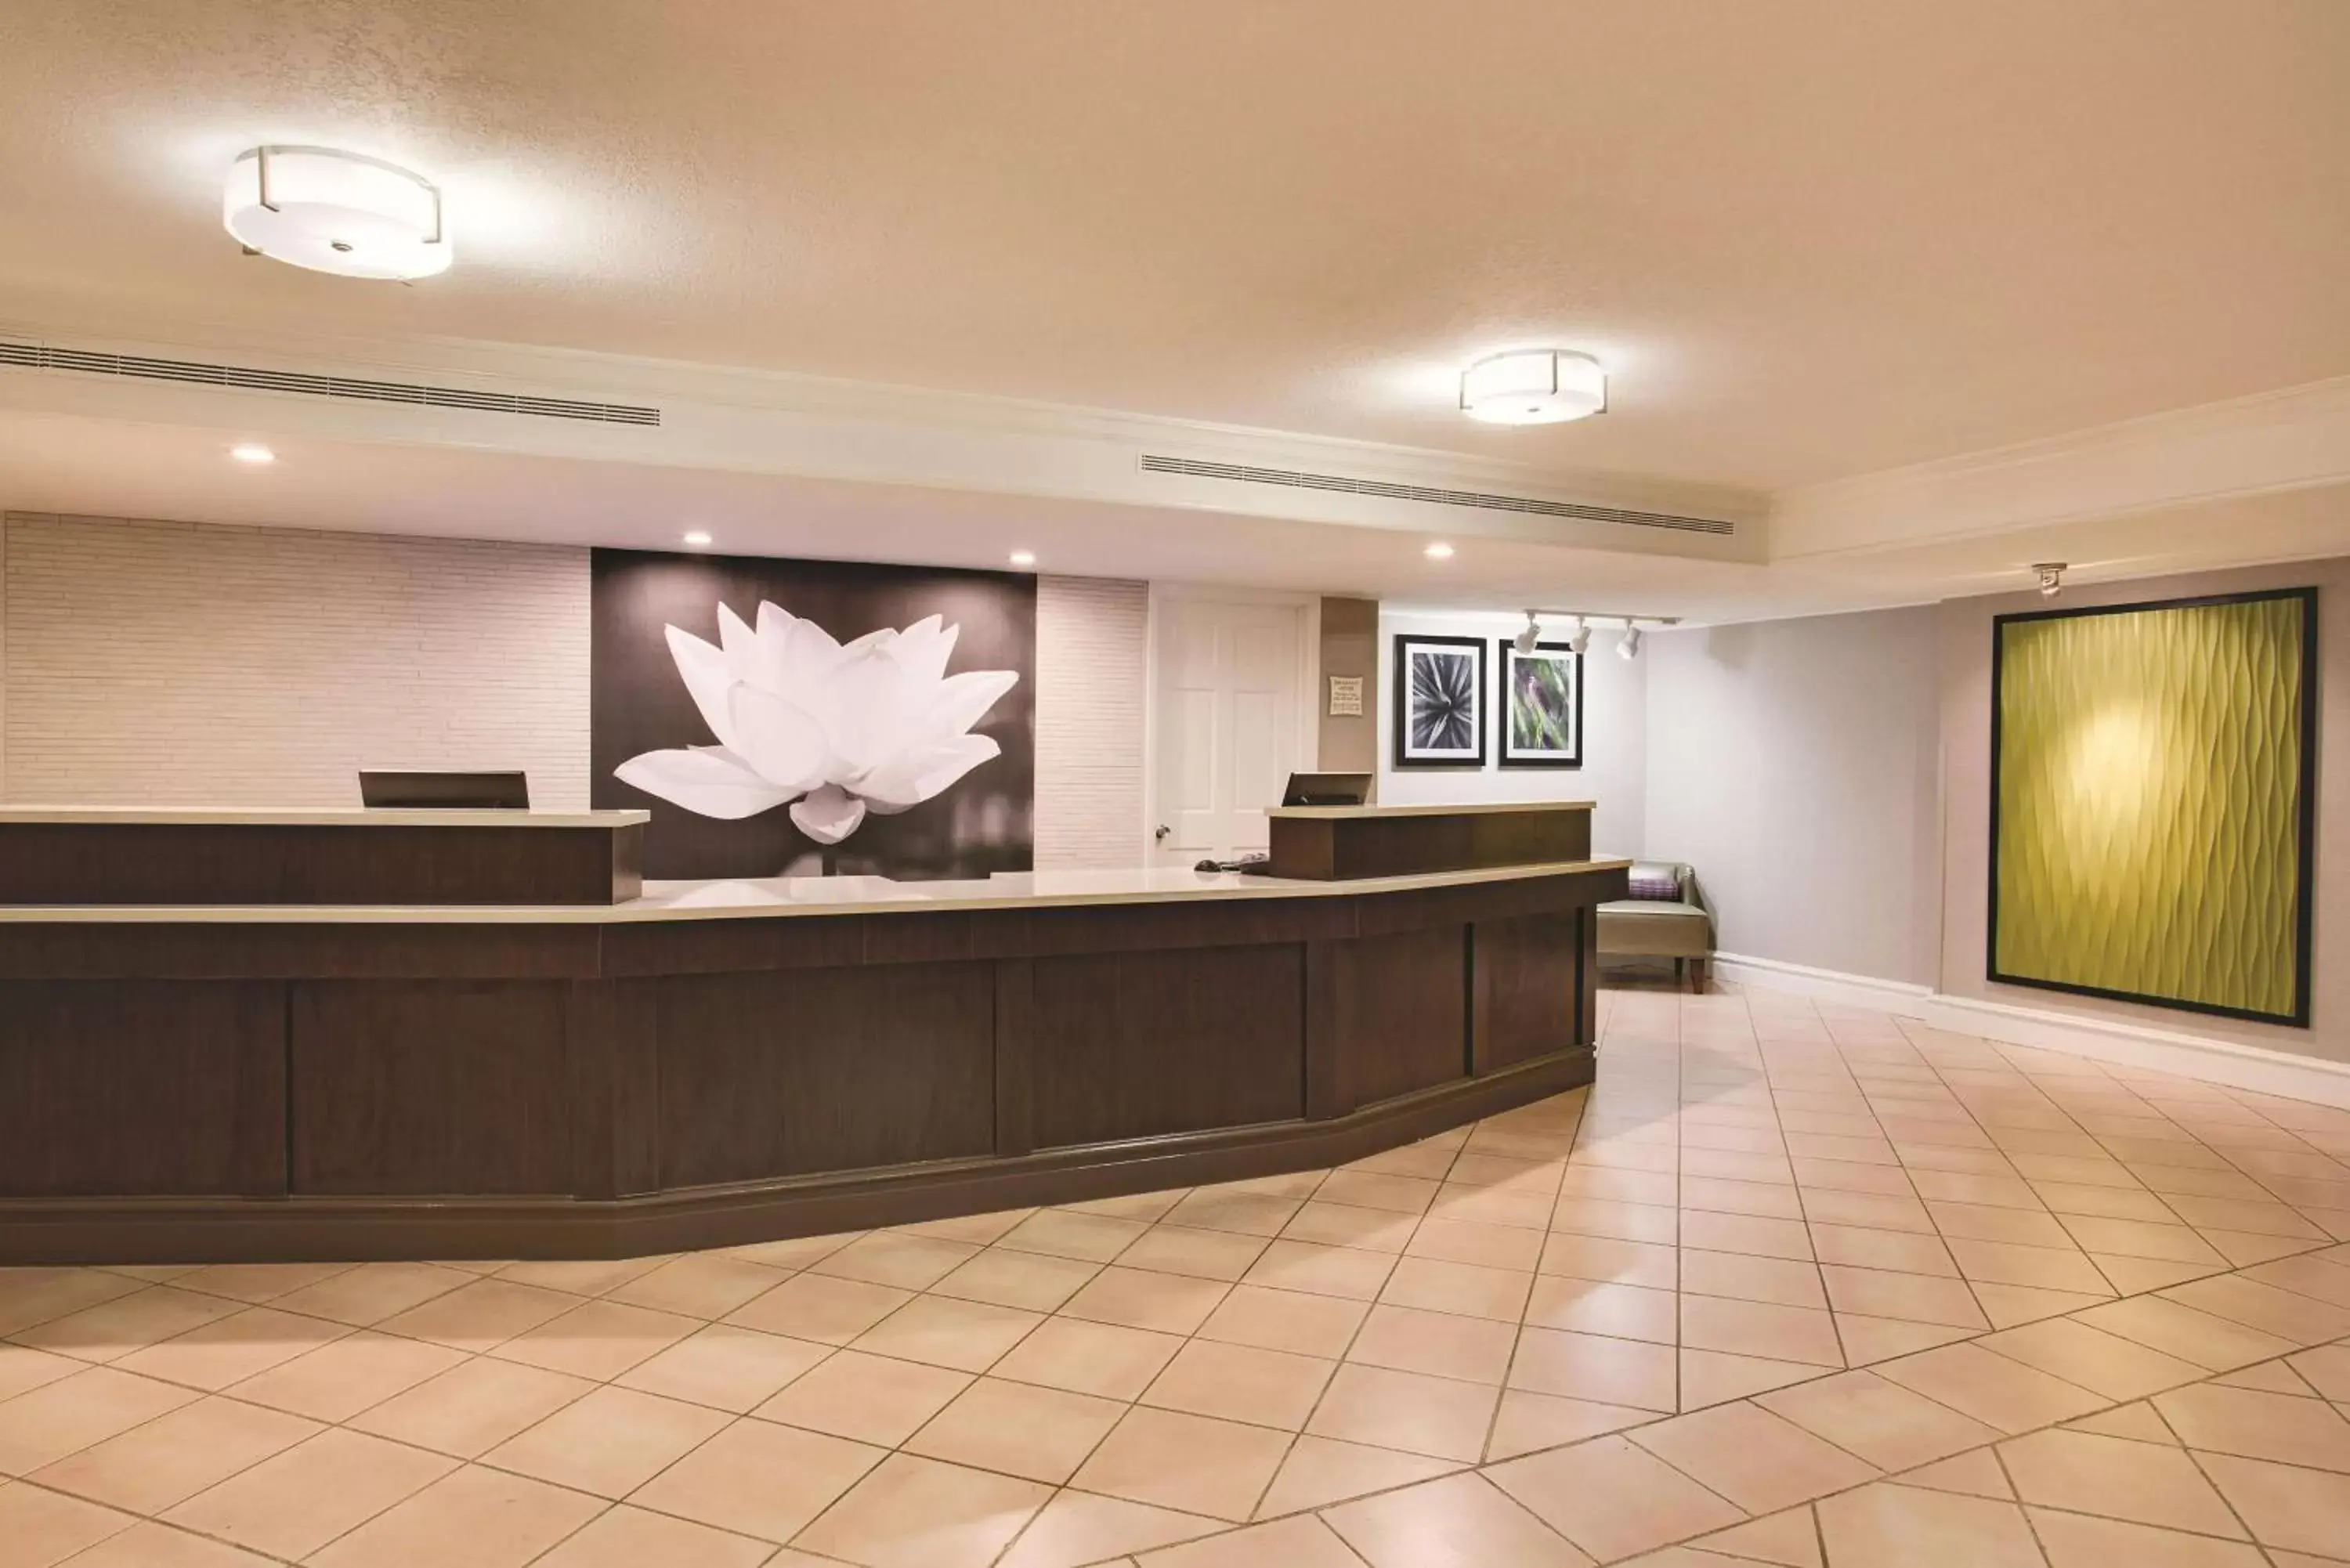 Lobby or reception, Lobby/Reception in Days Inn by Wyndham Gainesville Florida